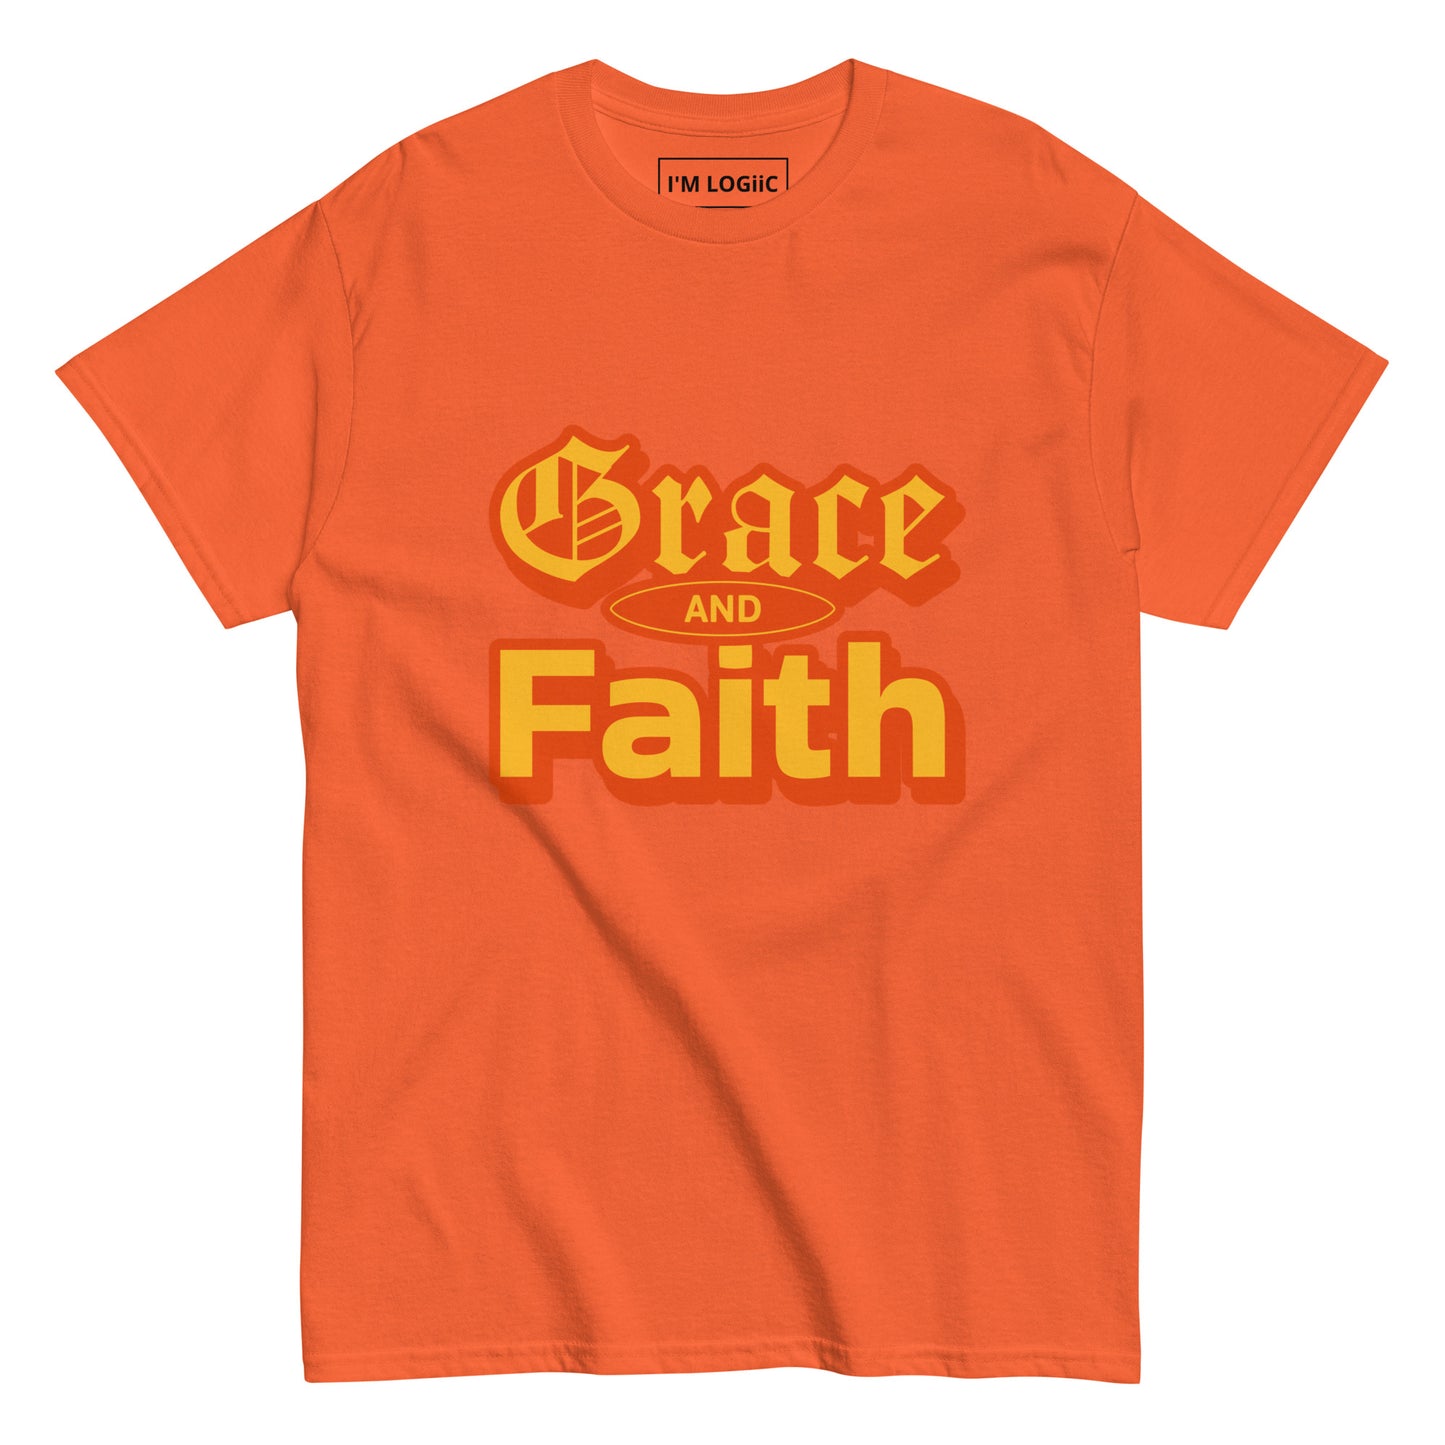 Grace and Faith classic tee